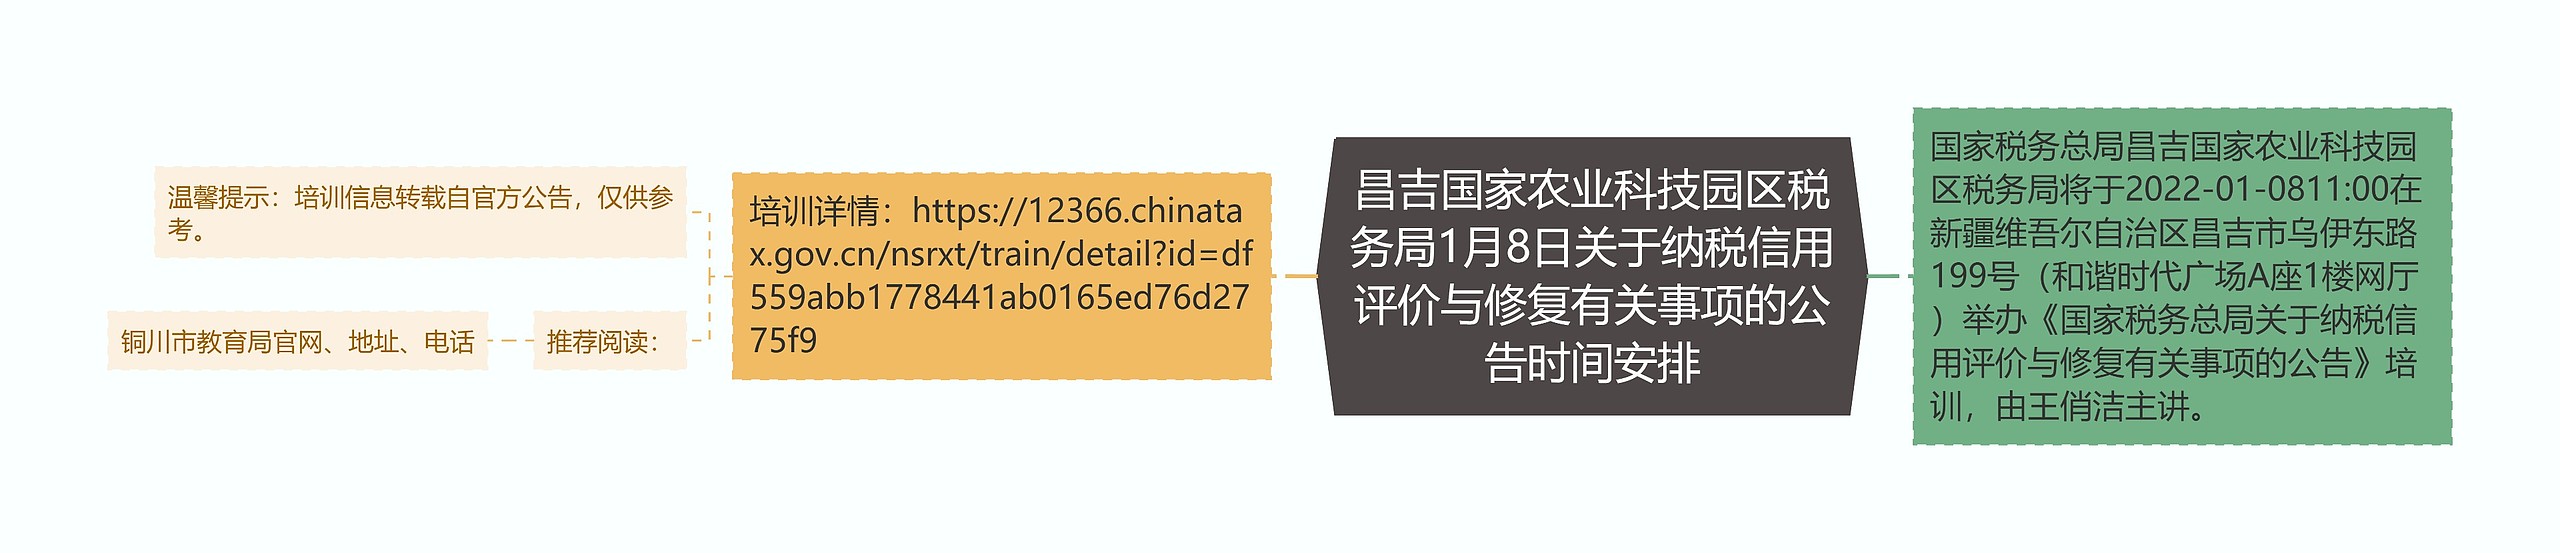 昌吉国家农业科技园区税务局1月8日关于纳税信用评价与修复有关事项的公告时间安排思维导图